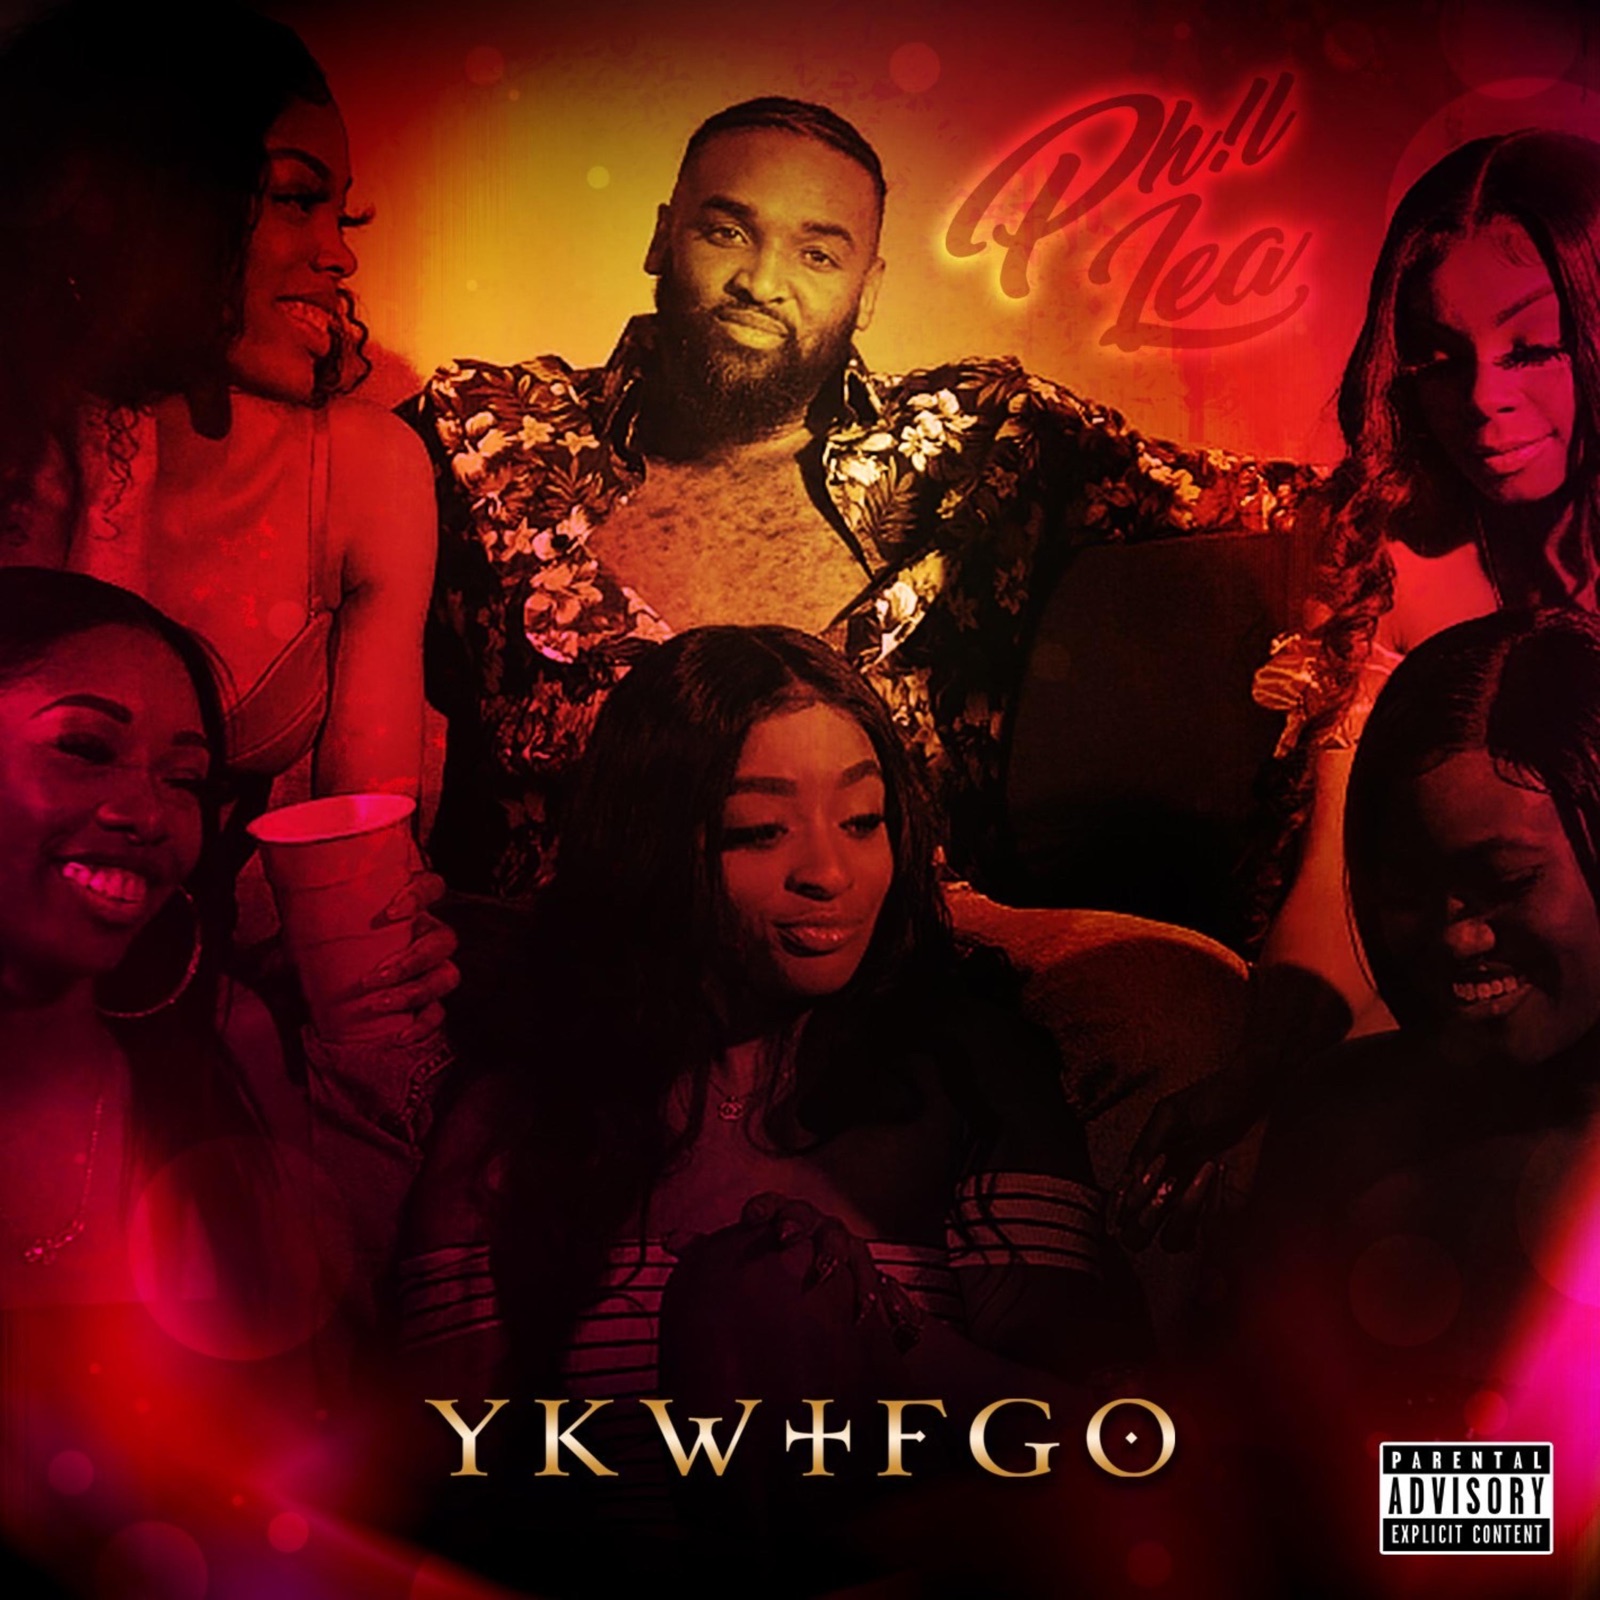 Ykwtfgo - Single